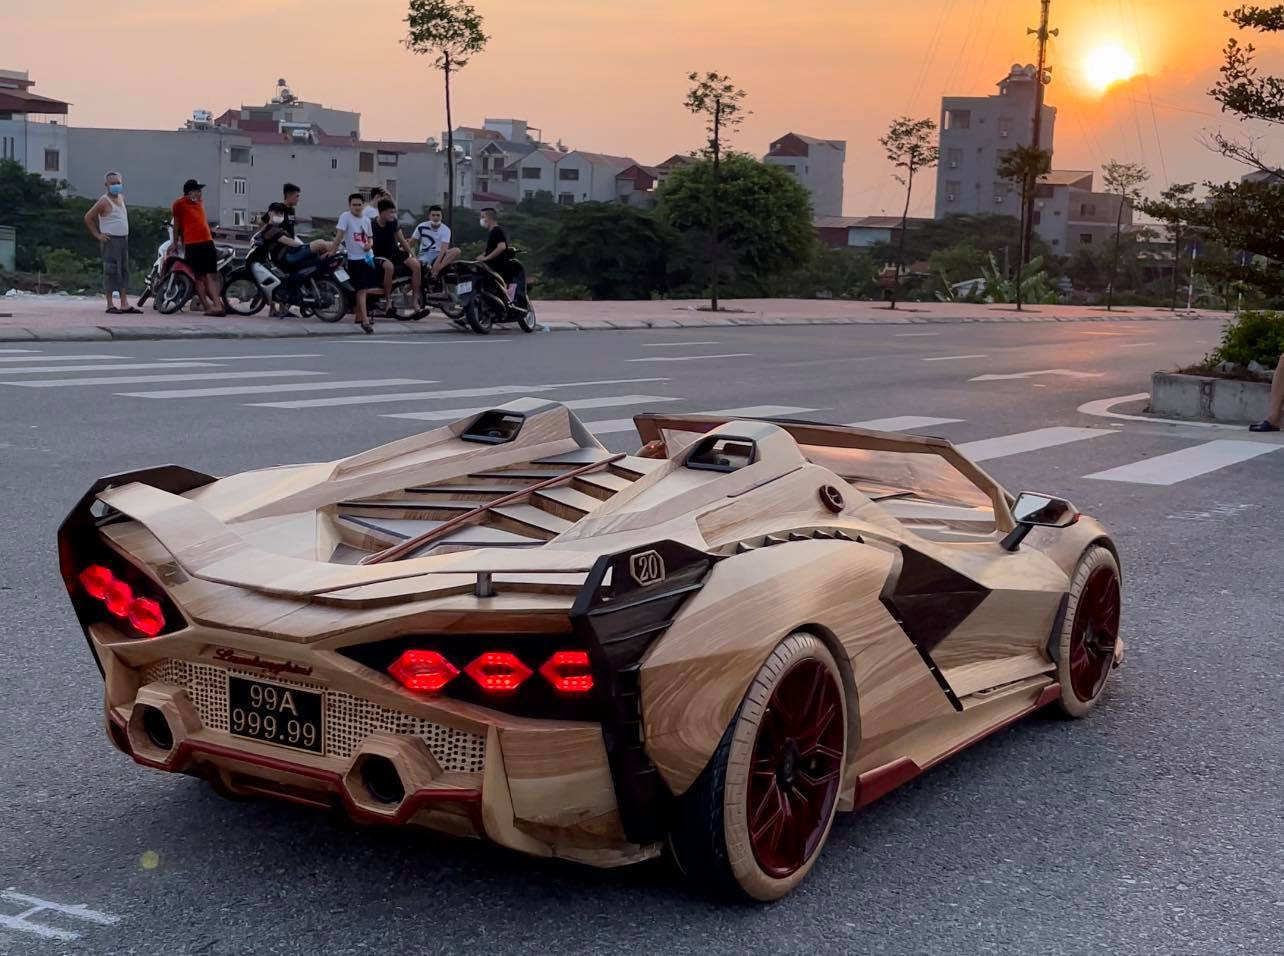 Ông bố Bắc Ninh chế tạo ‘siêu xe’ bằng gỗ để con trai vi vu trên đường - Ảnh 7.